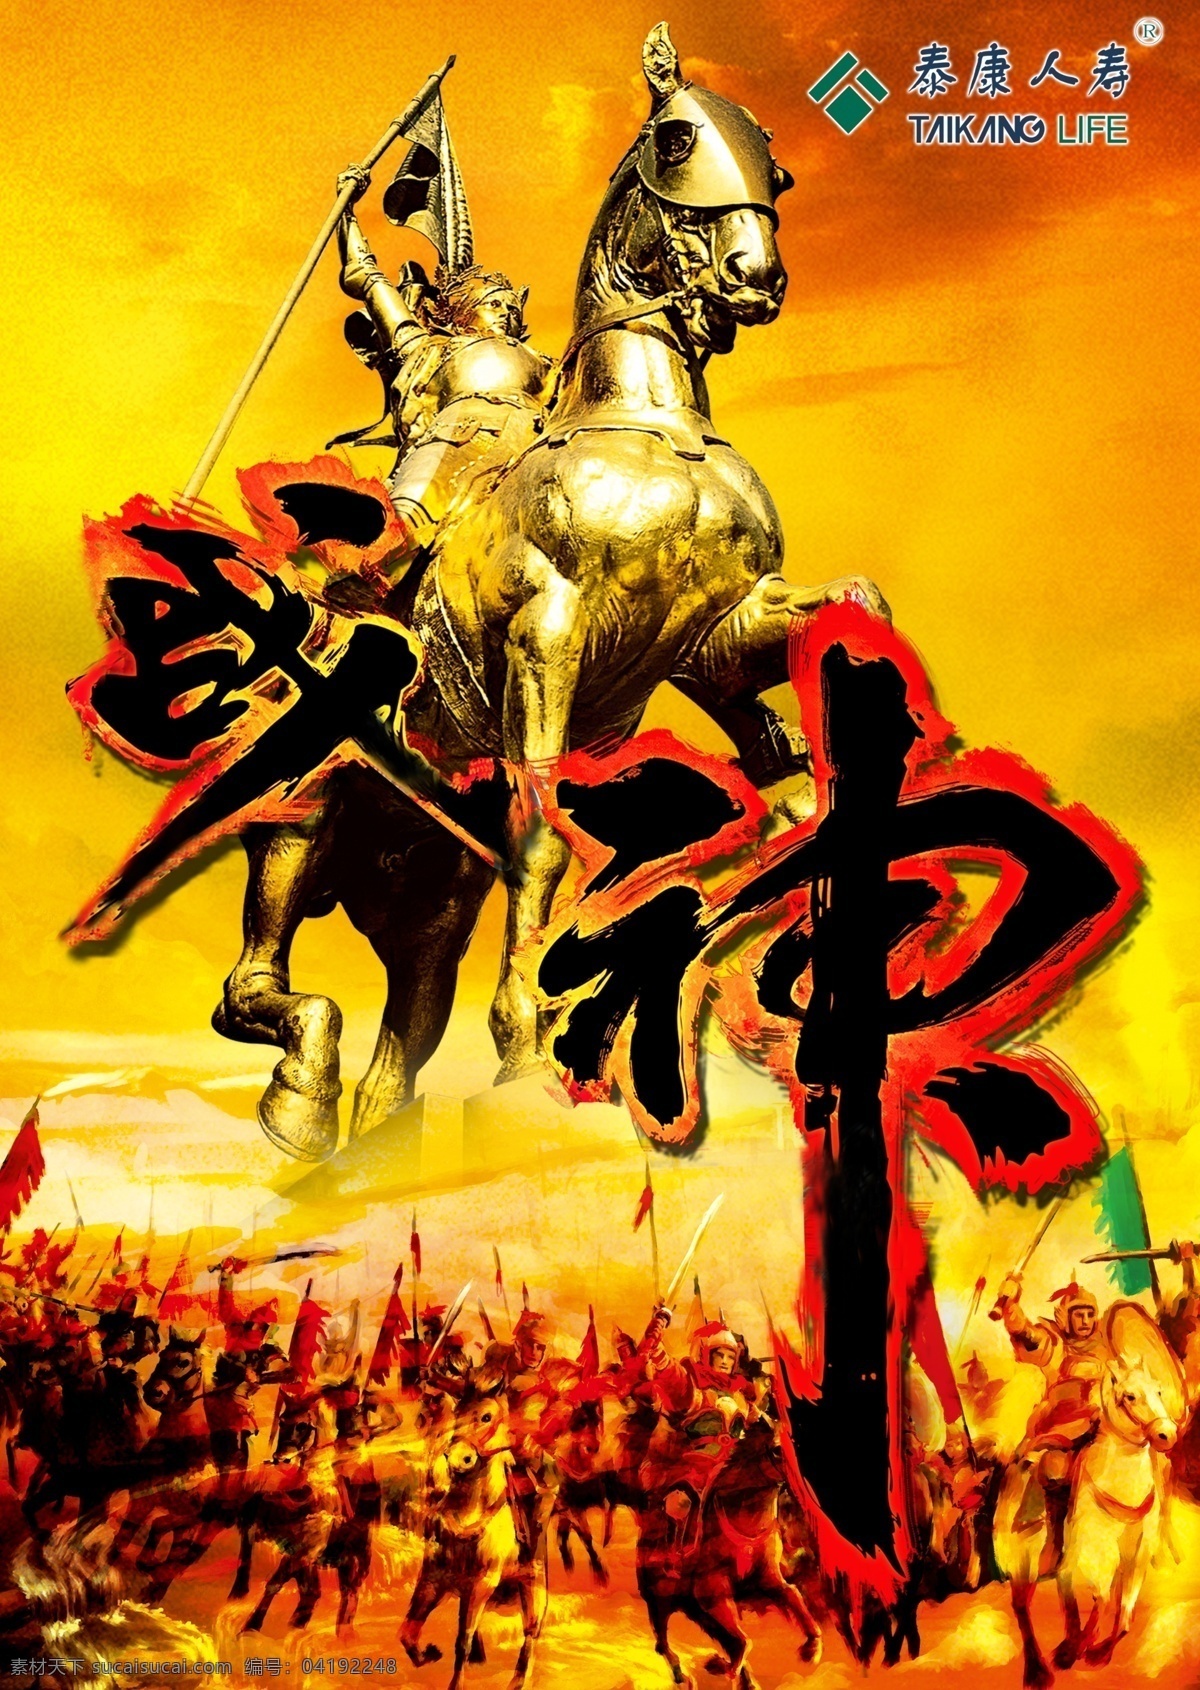 泰康人寿海报 战神 霸气 骑士 战场 广告设计模板 源文件